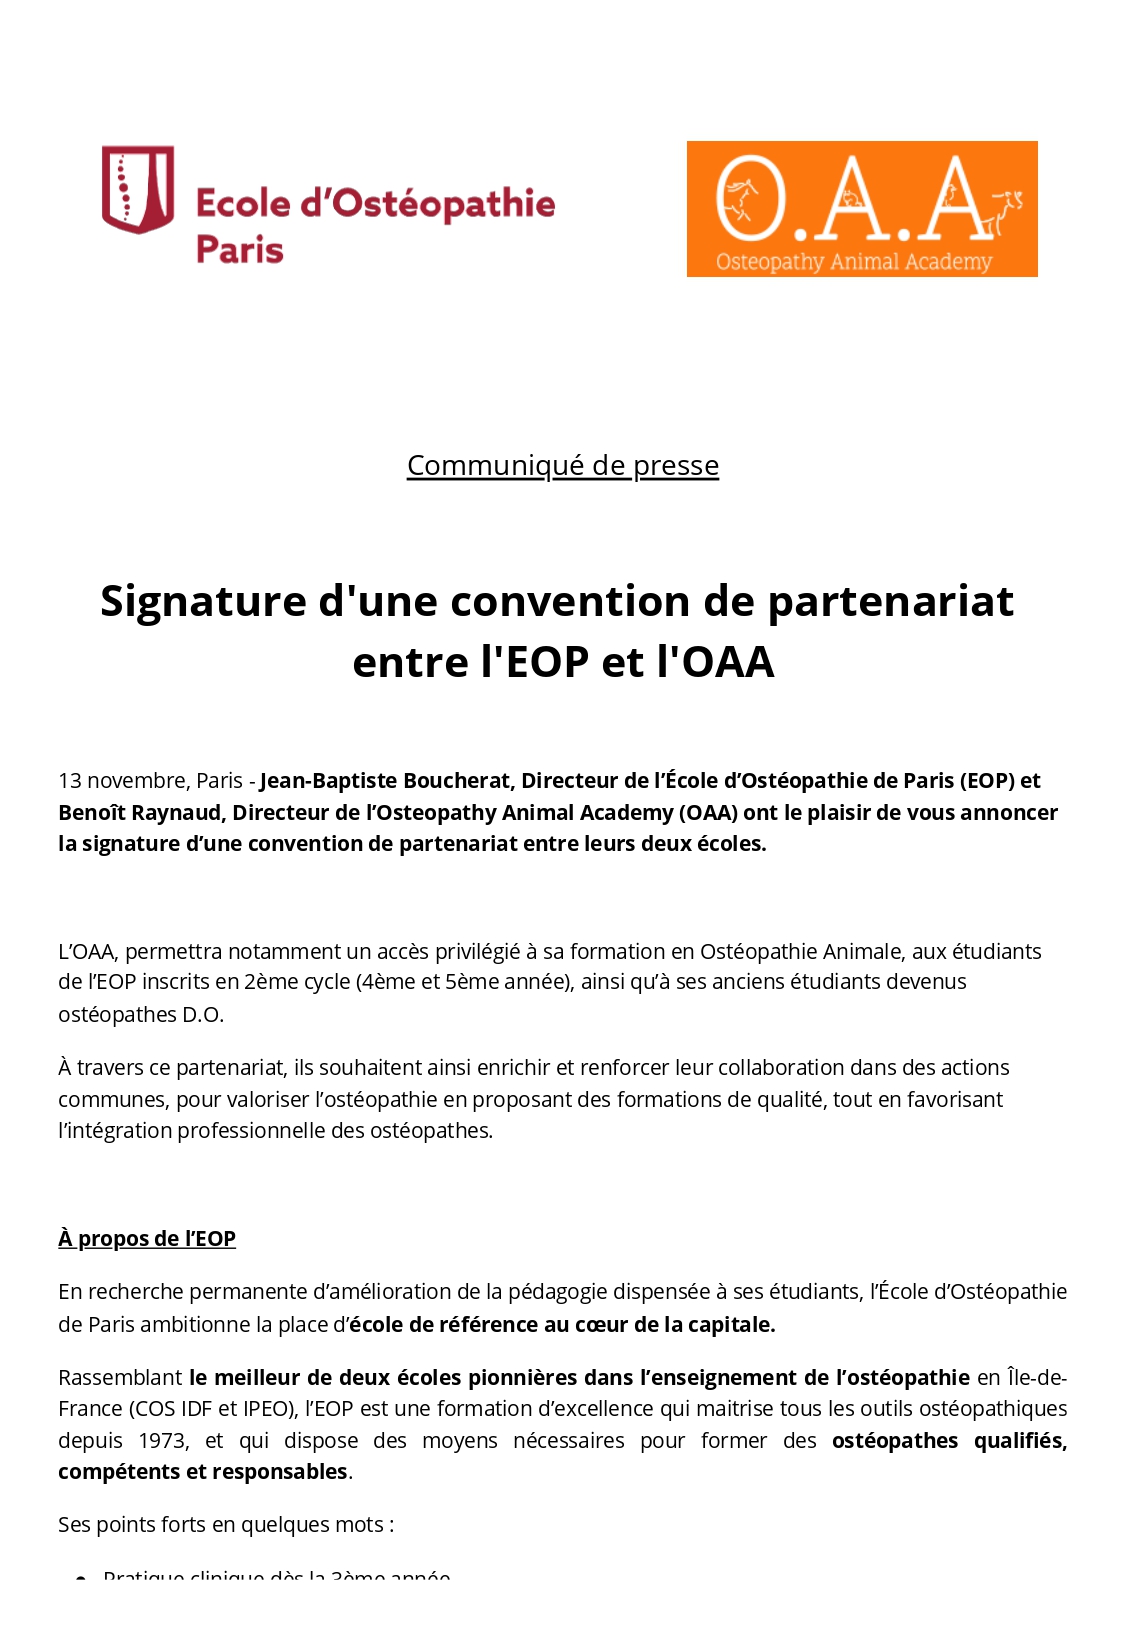 Signature d’une convention de partenariat entre l’EOP et l’OAA